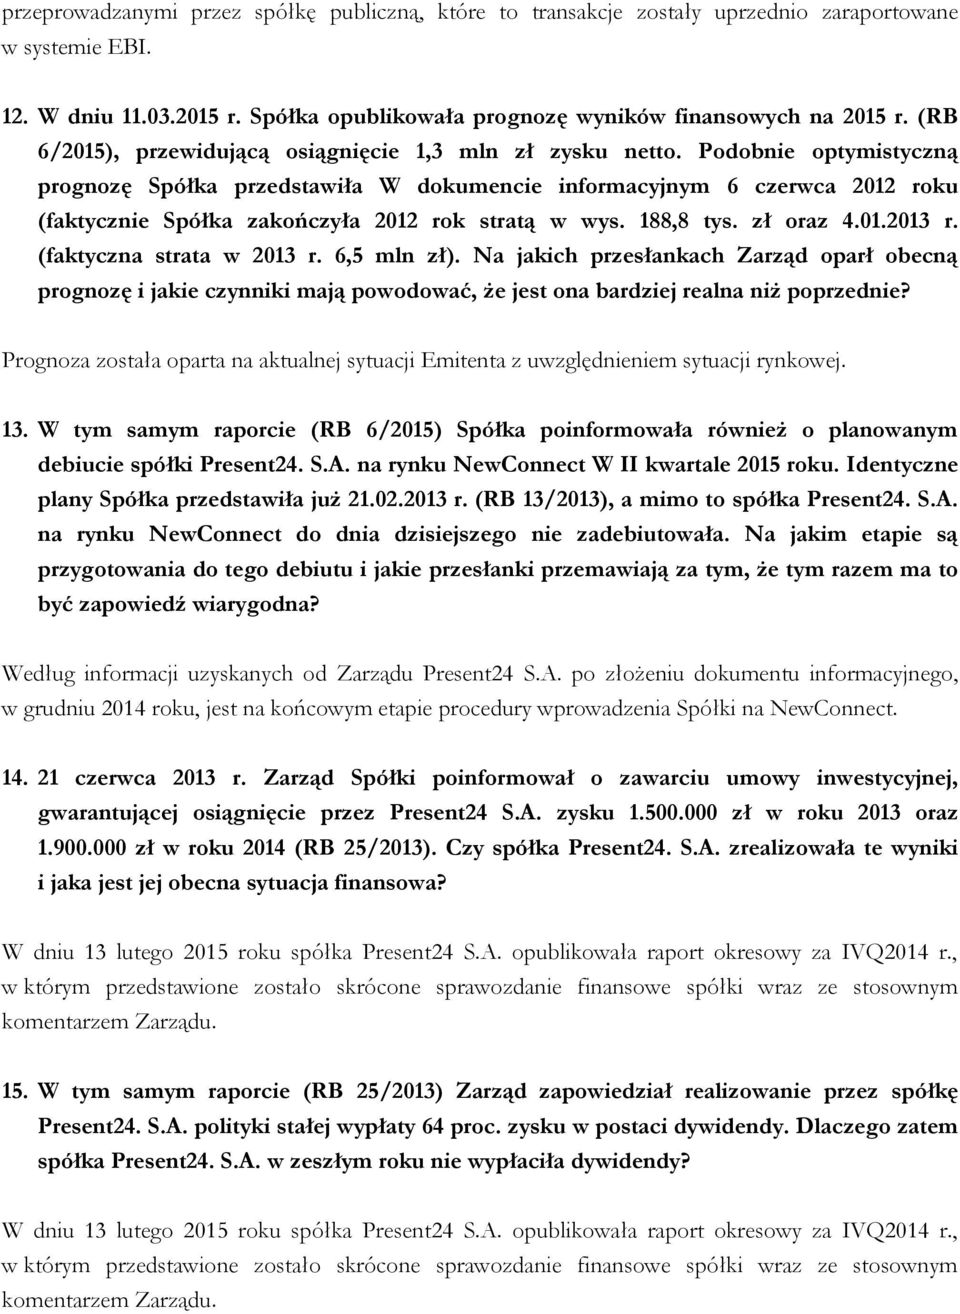 Podobnie optymistyczną prognozę Spółka przedstawiła W dokumencie informacyjnym 6 czerwca 2012 roku (faktycznie Spółka zakończyła 2012 rok stratą w wys. 188,8 tys. zł oraz 4.01.2013 r.